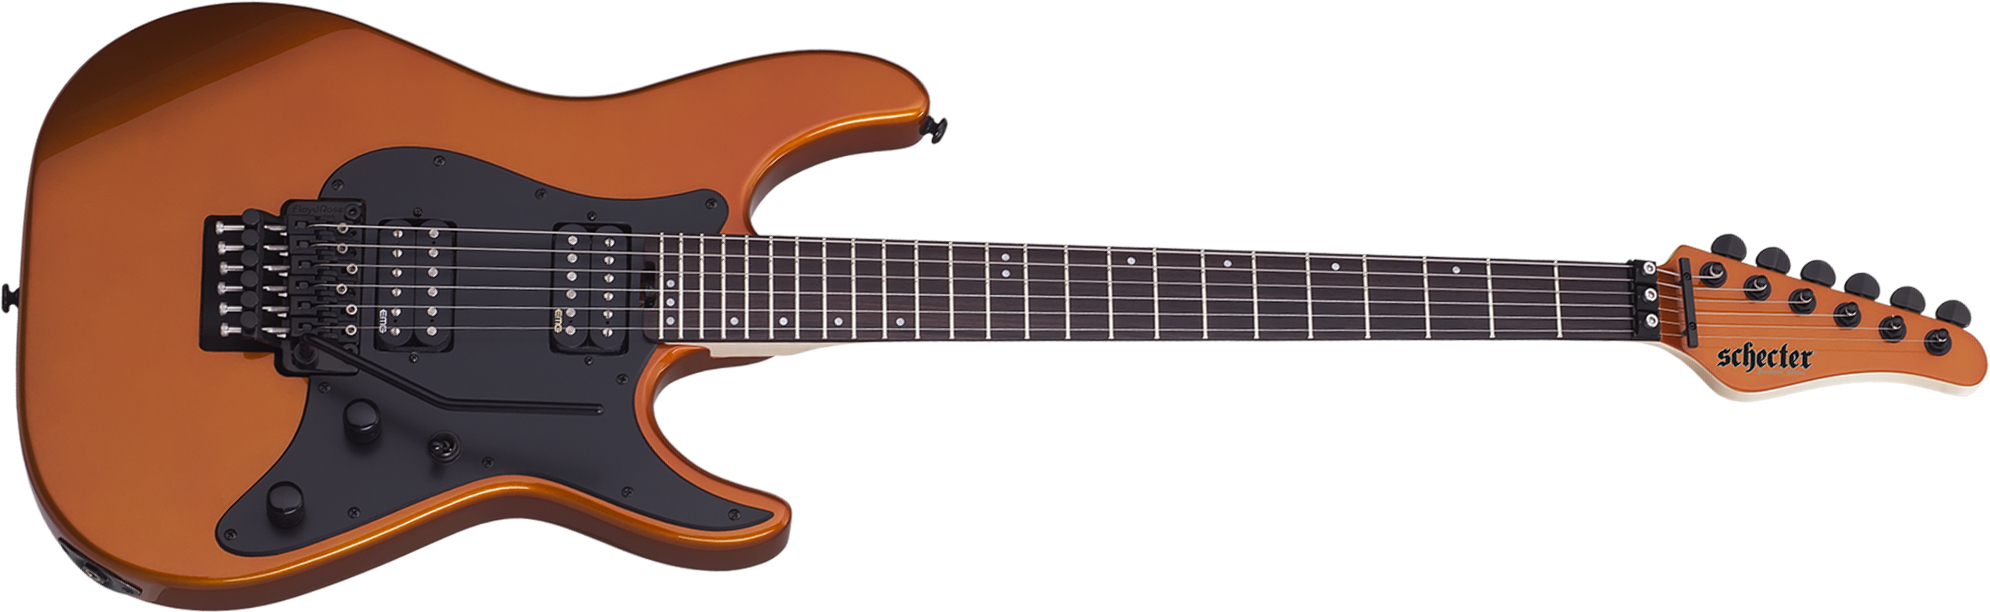 Schecter Sun Valley Super Shredder Fr 2h Emg Rw - Lambo Orange - E-Gitarre in Teleform - Main picture